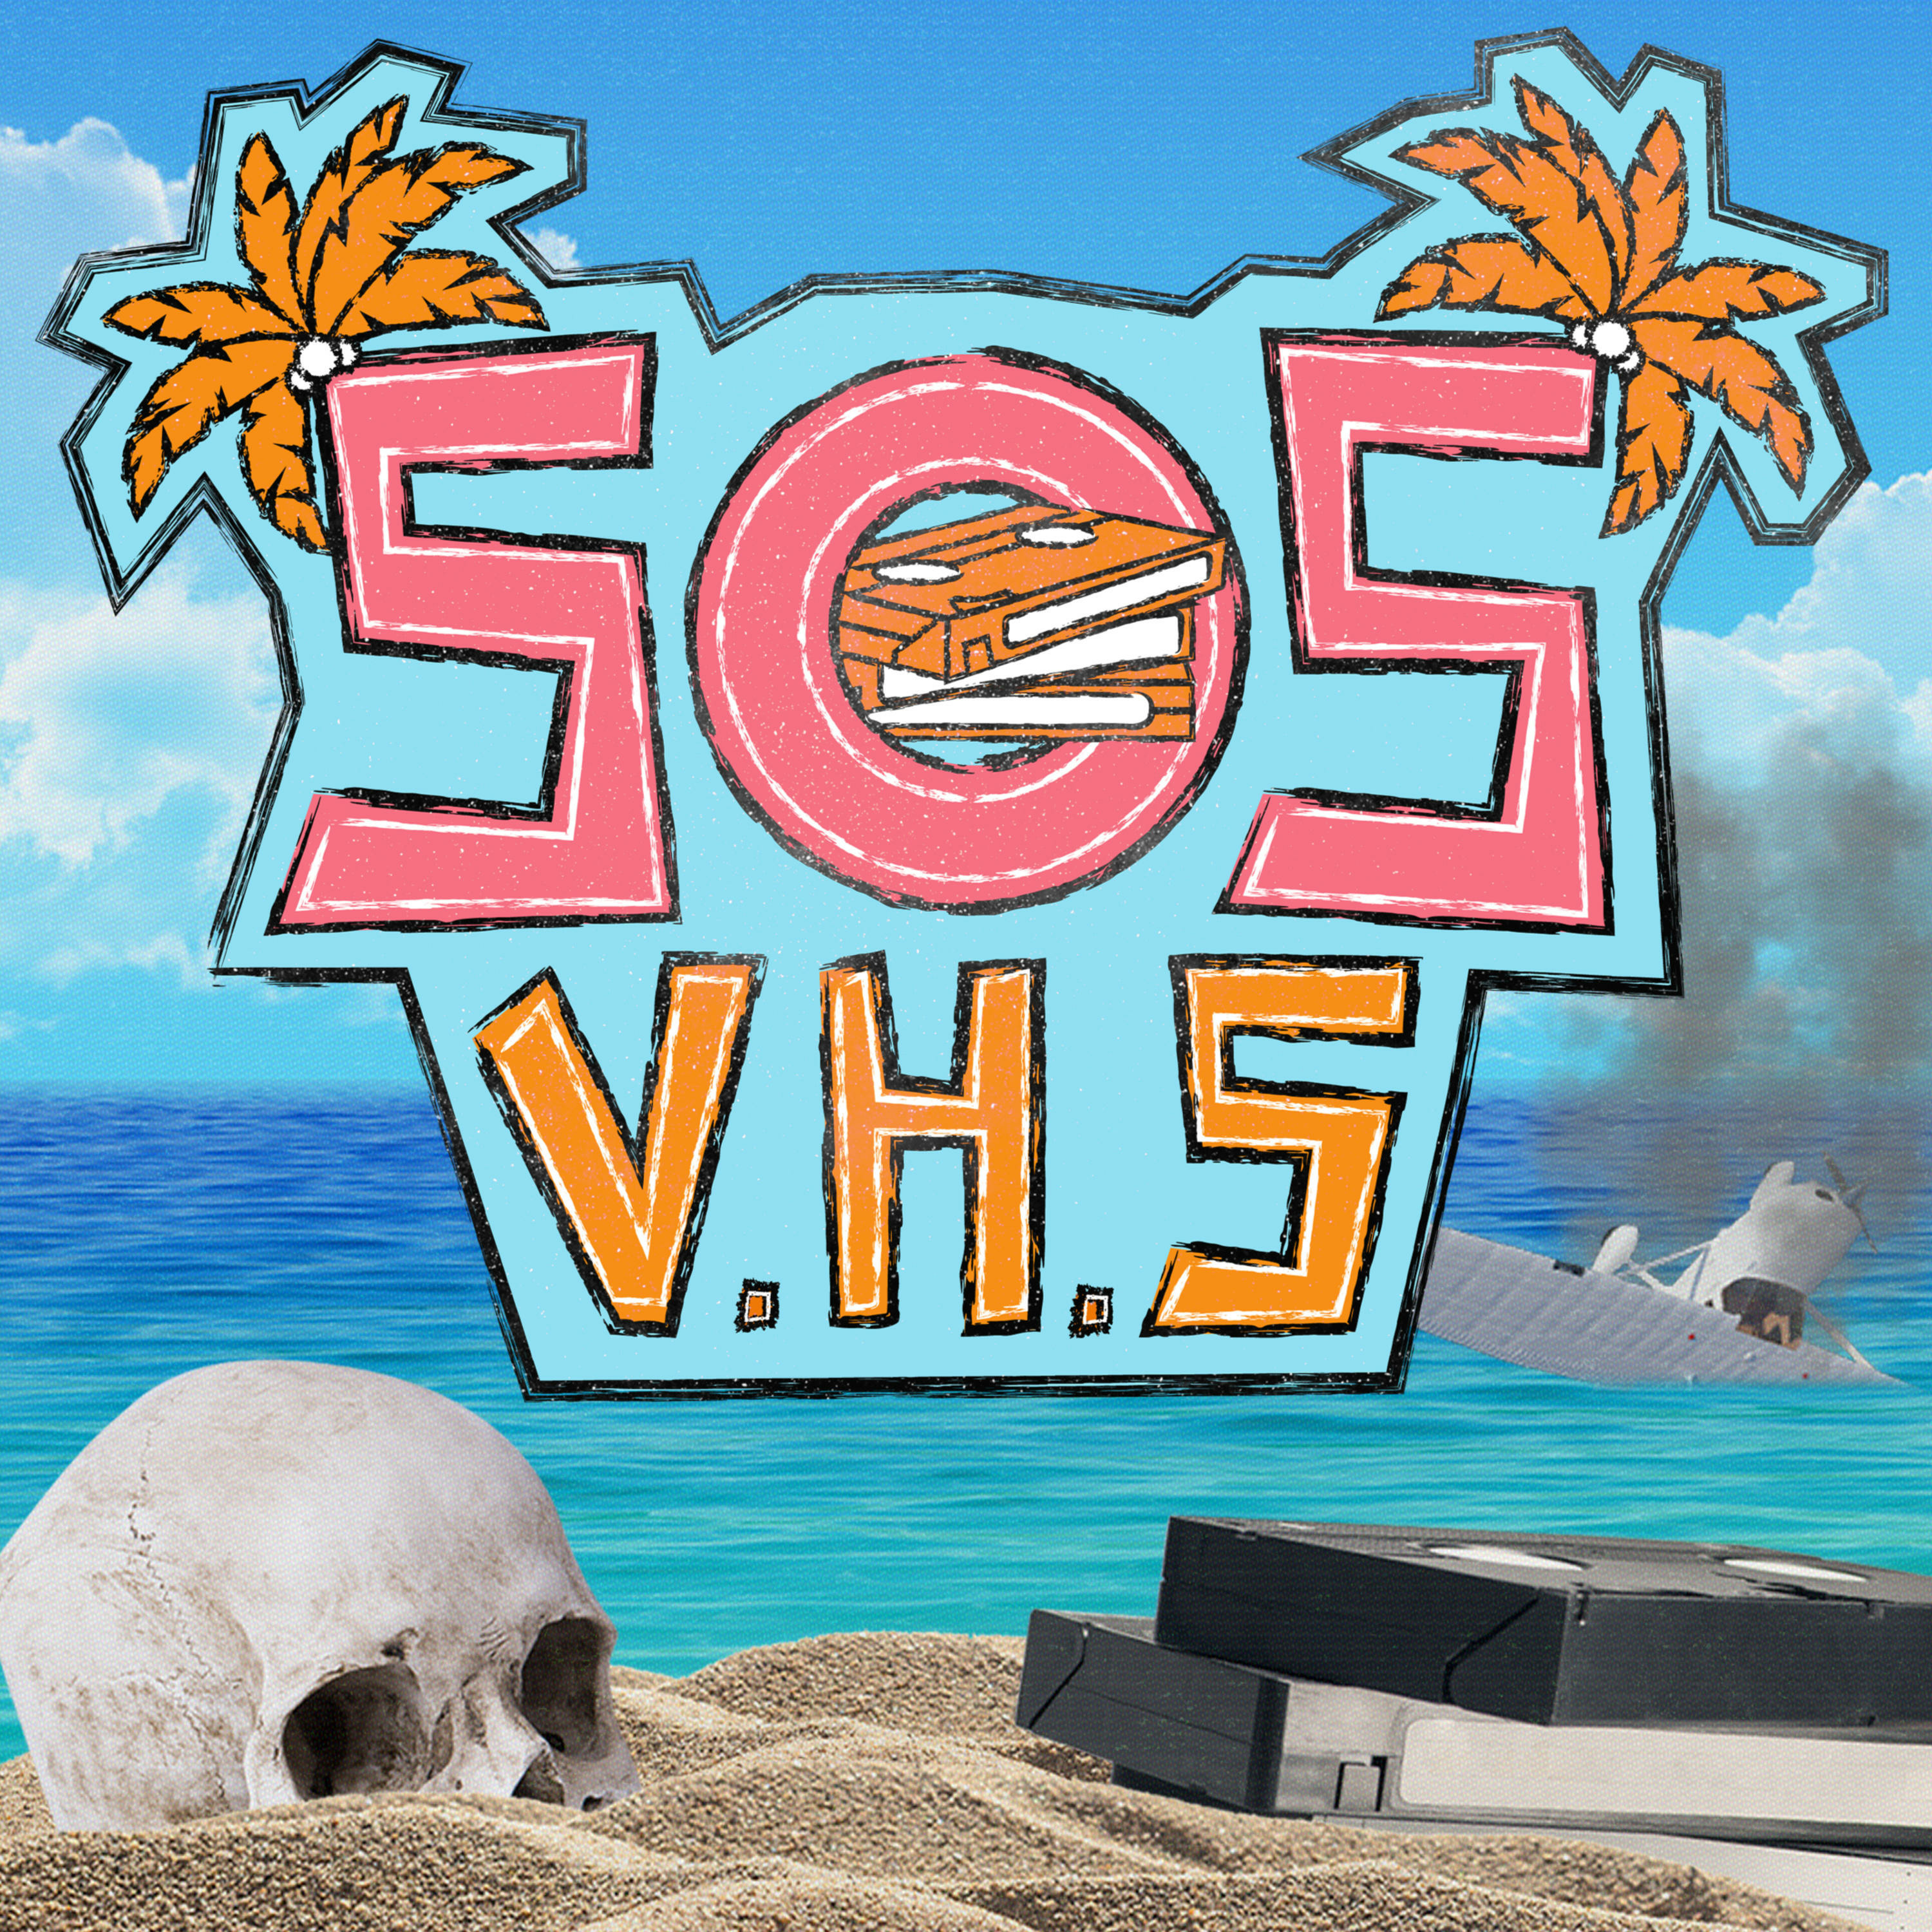 SOS VHS